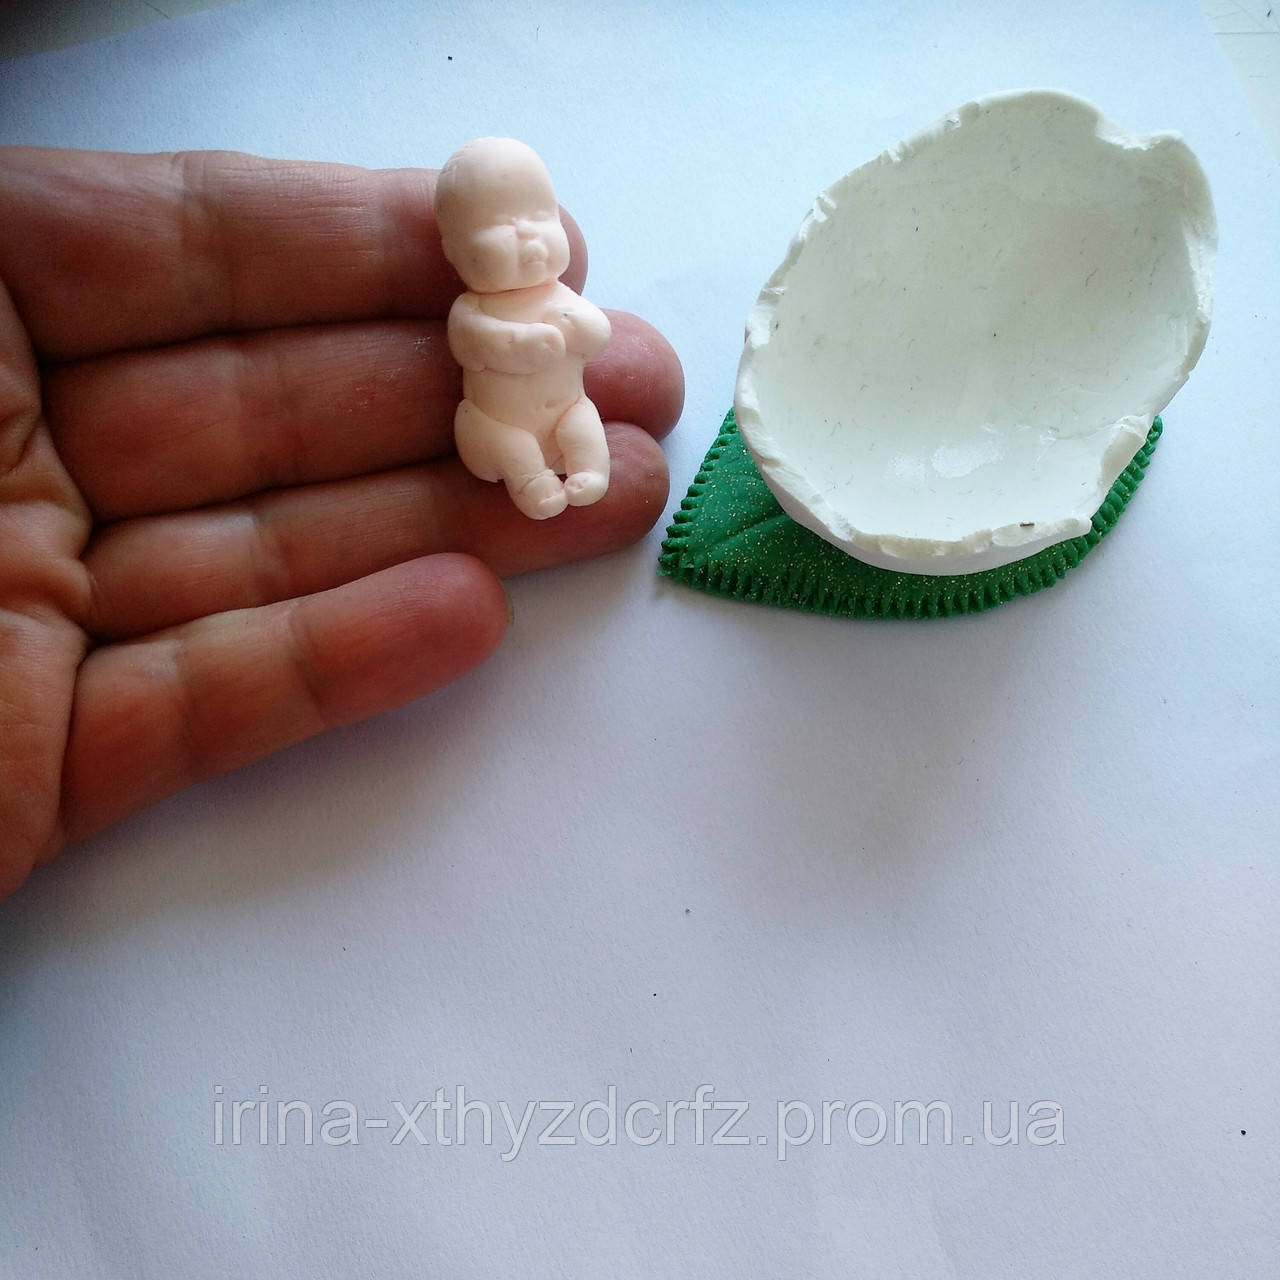 Лялька мініатюрний немовля з полімерної глини, фото 1